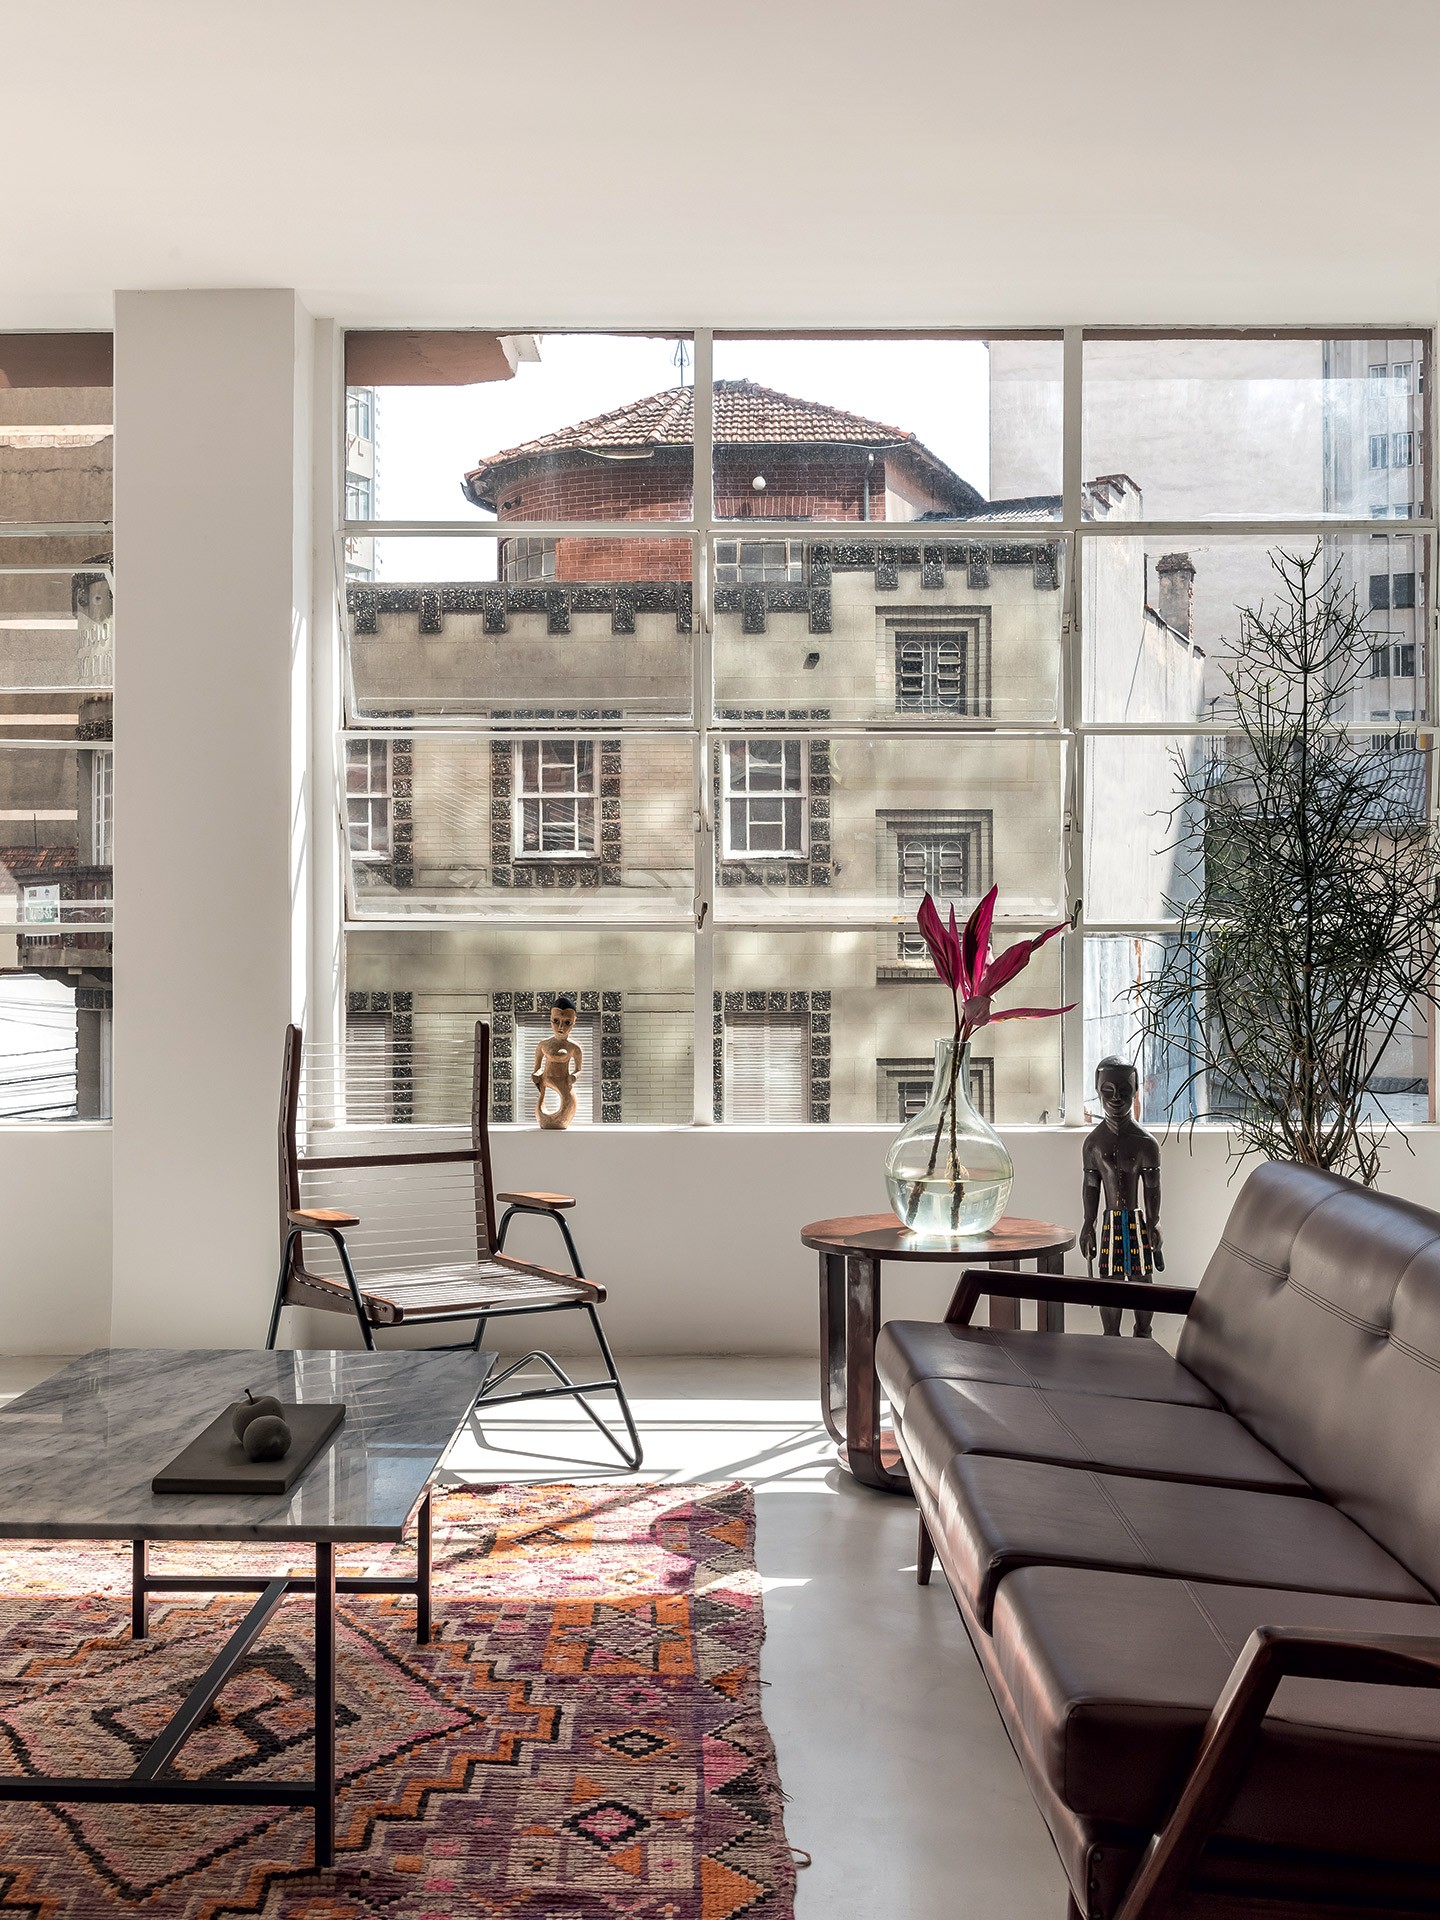 Apartamento-galeria de 400 m² exibe peças de arte em meio as paredes brancas e vista para o centro de Curitiba (Foto: Eduardo Macarios/Divulgação)